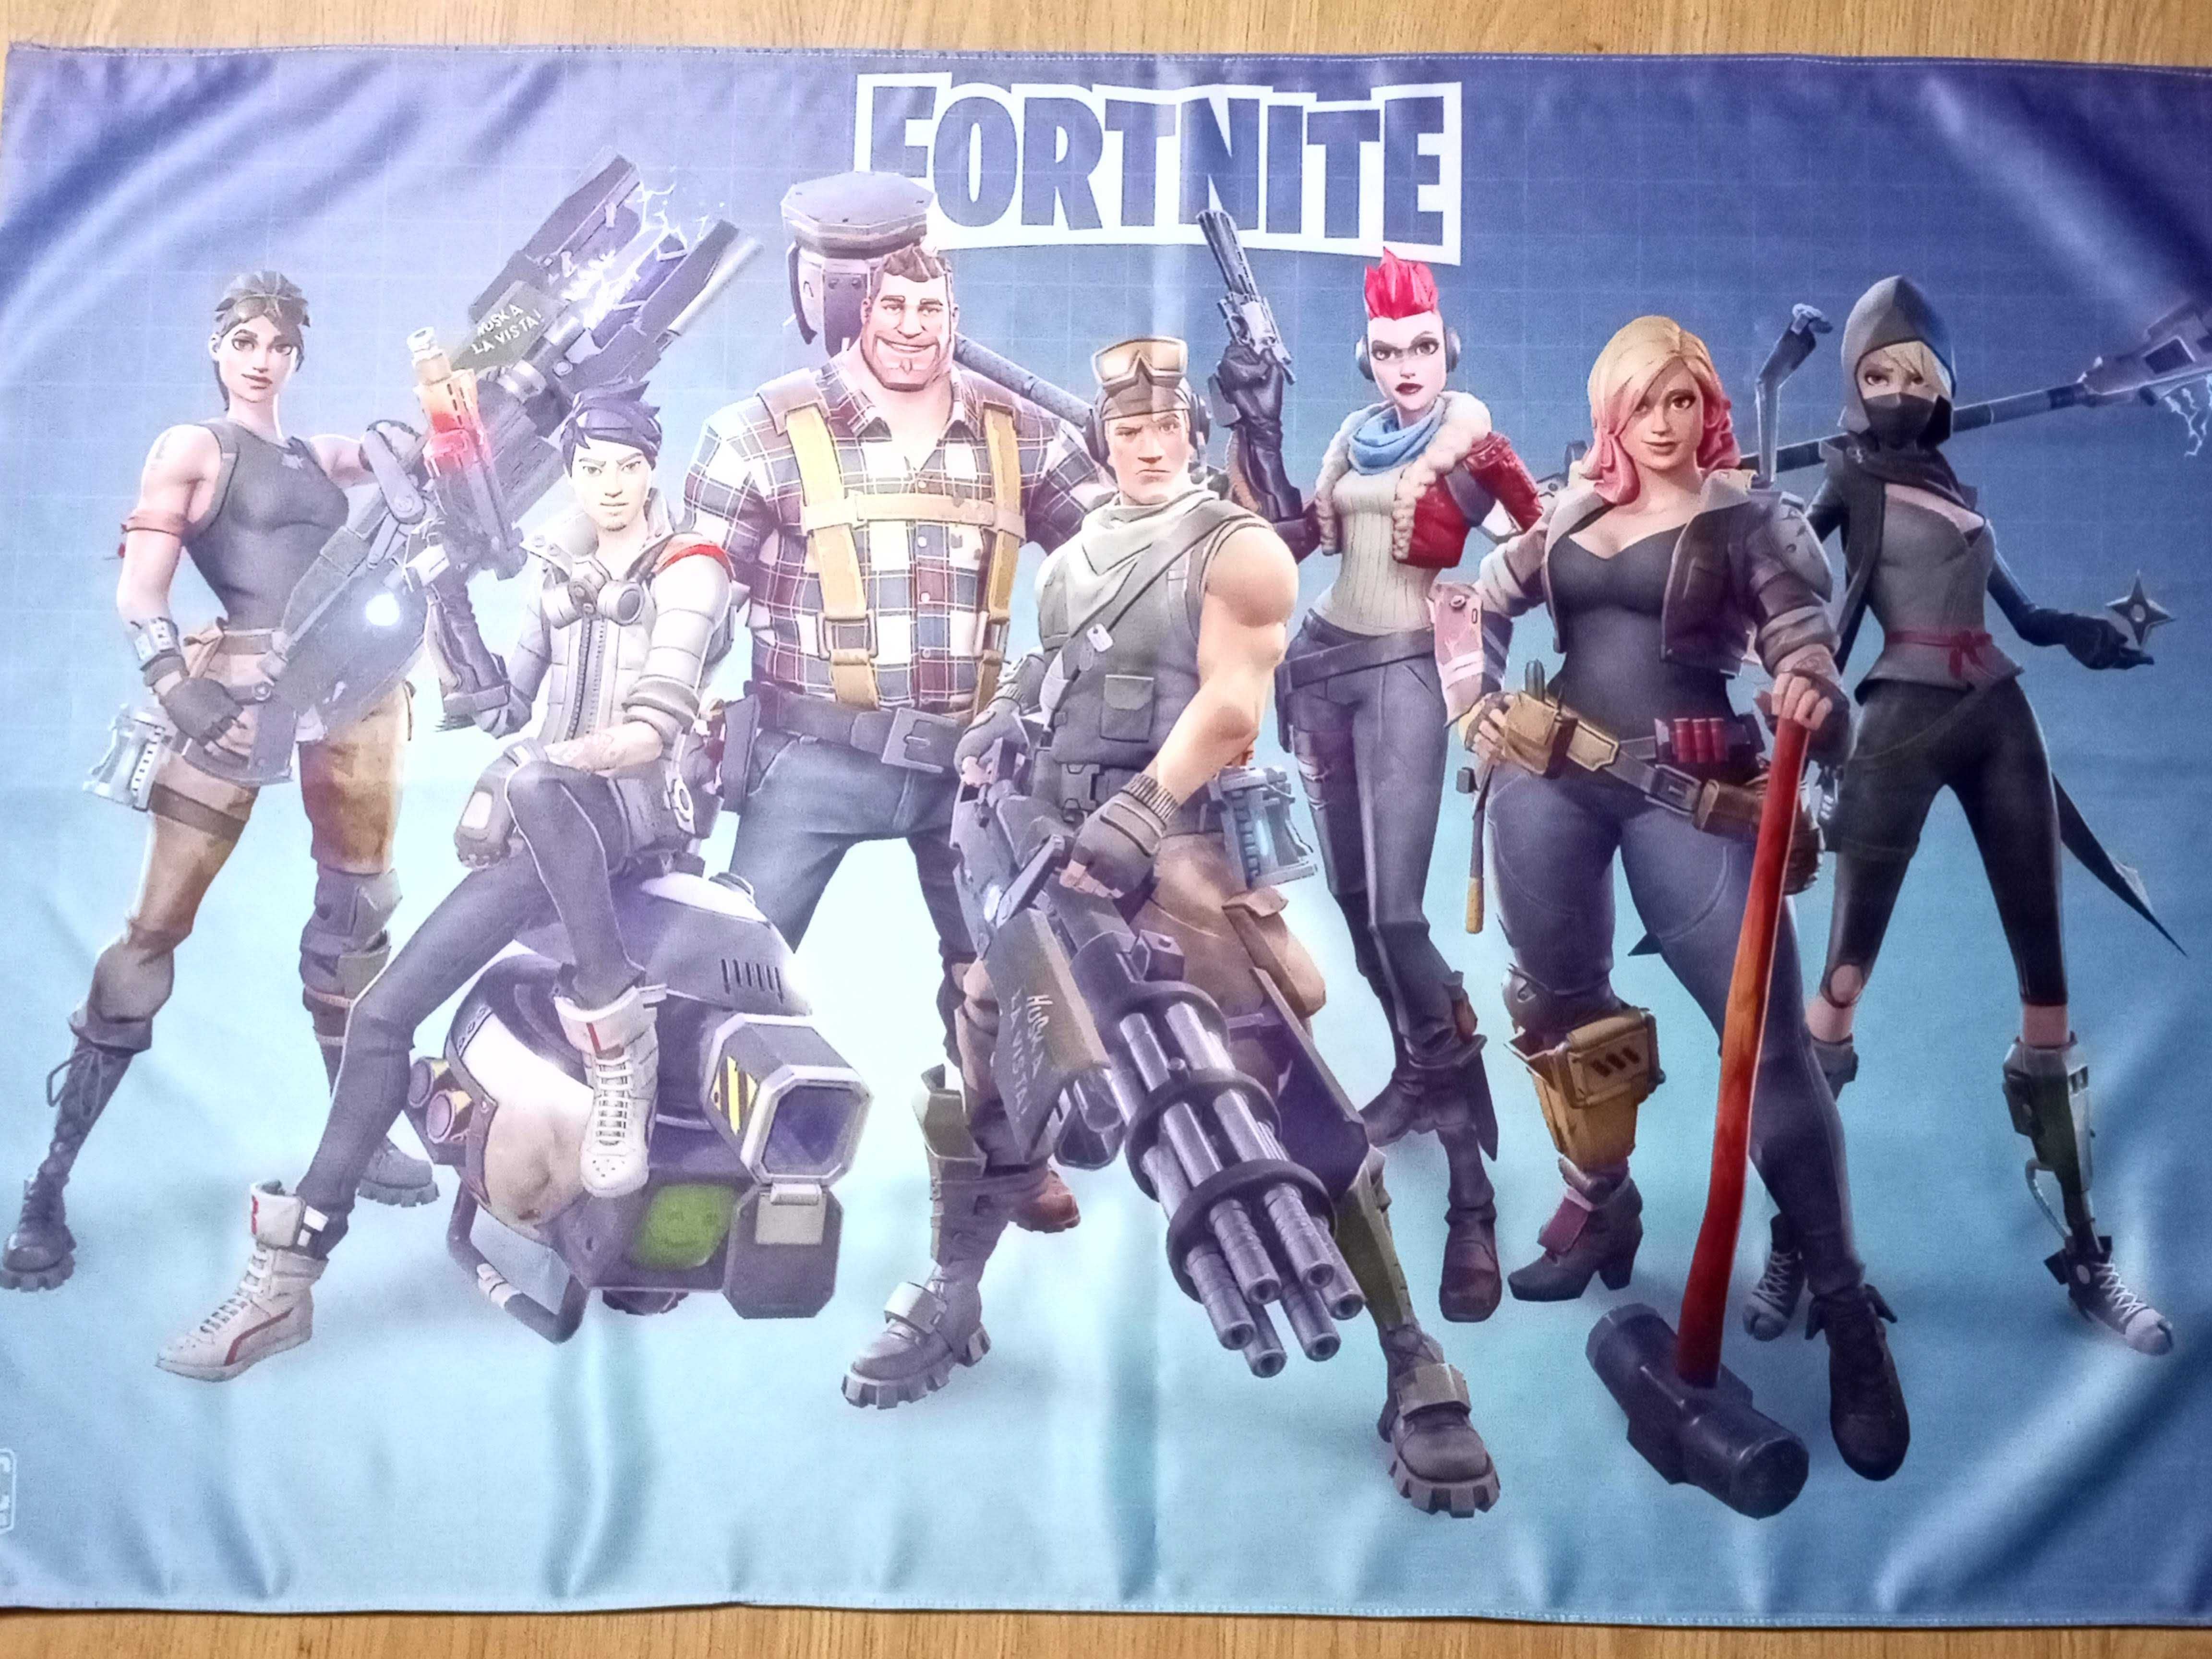 Poster de tecido/pano do jogo Fortnite.